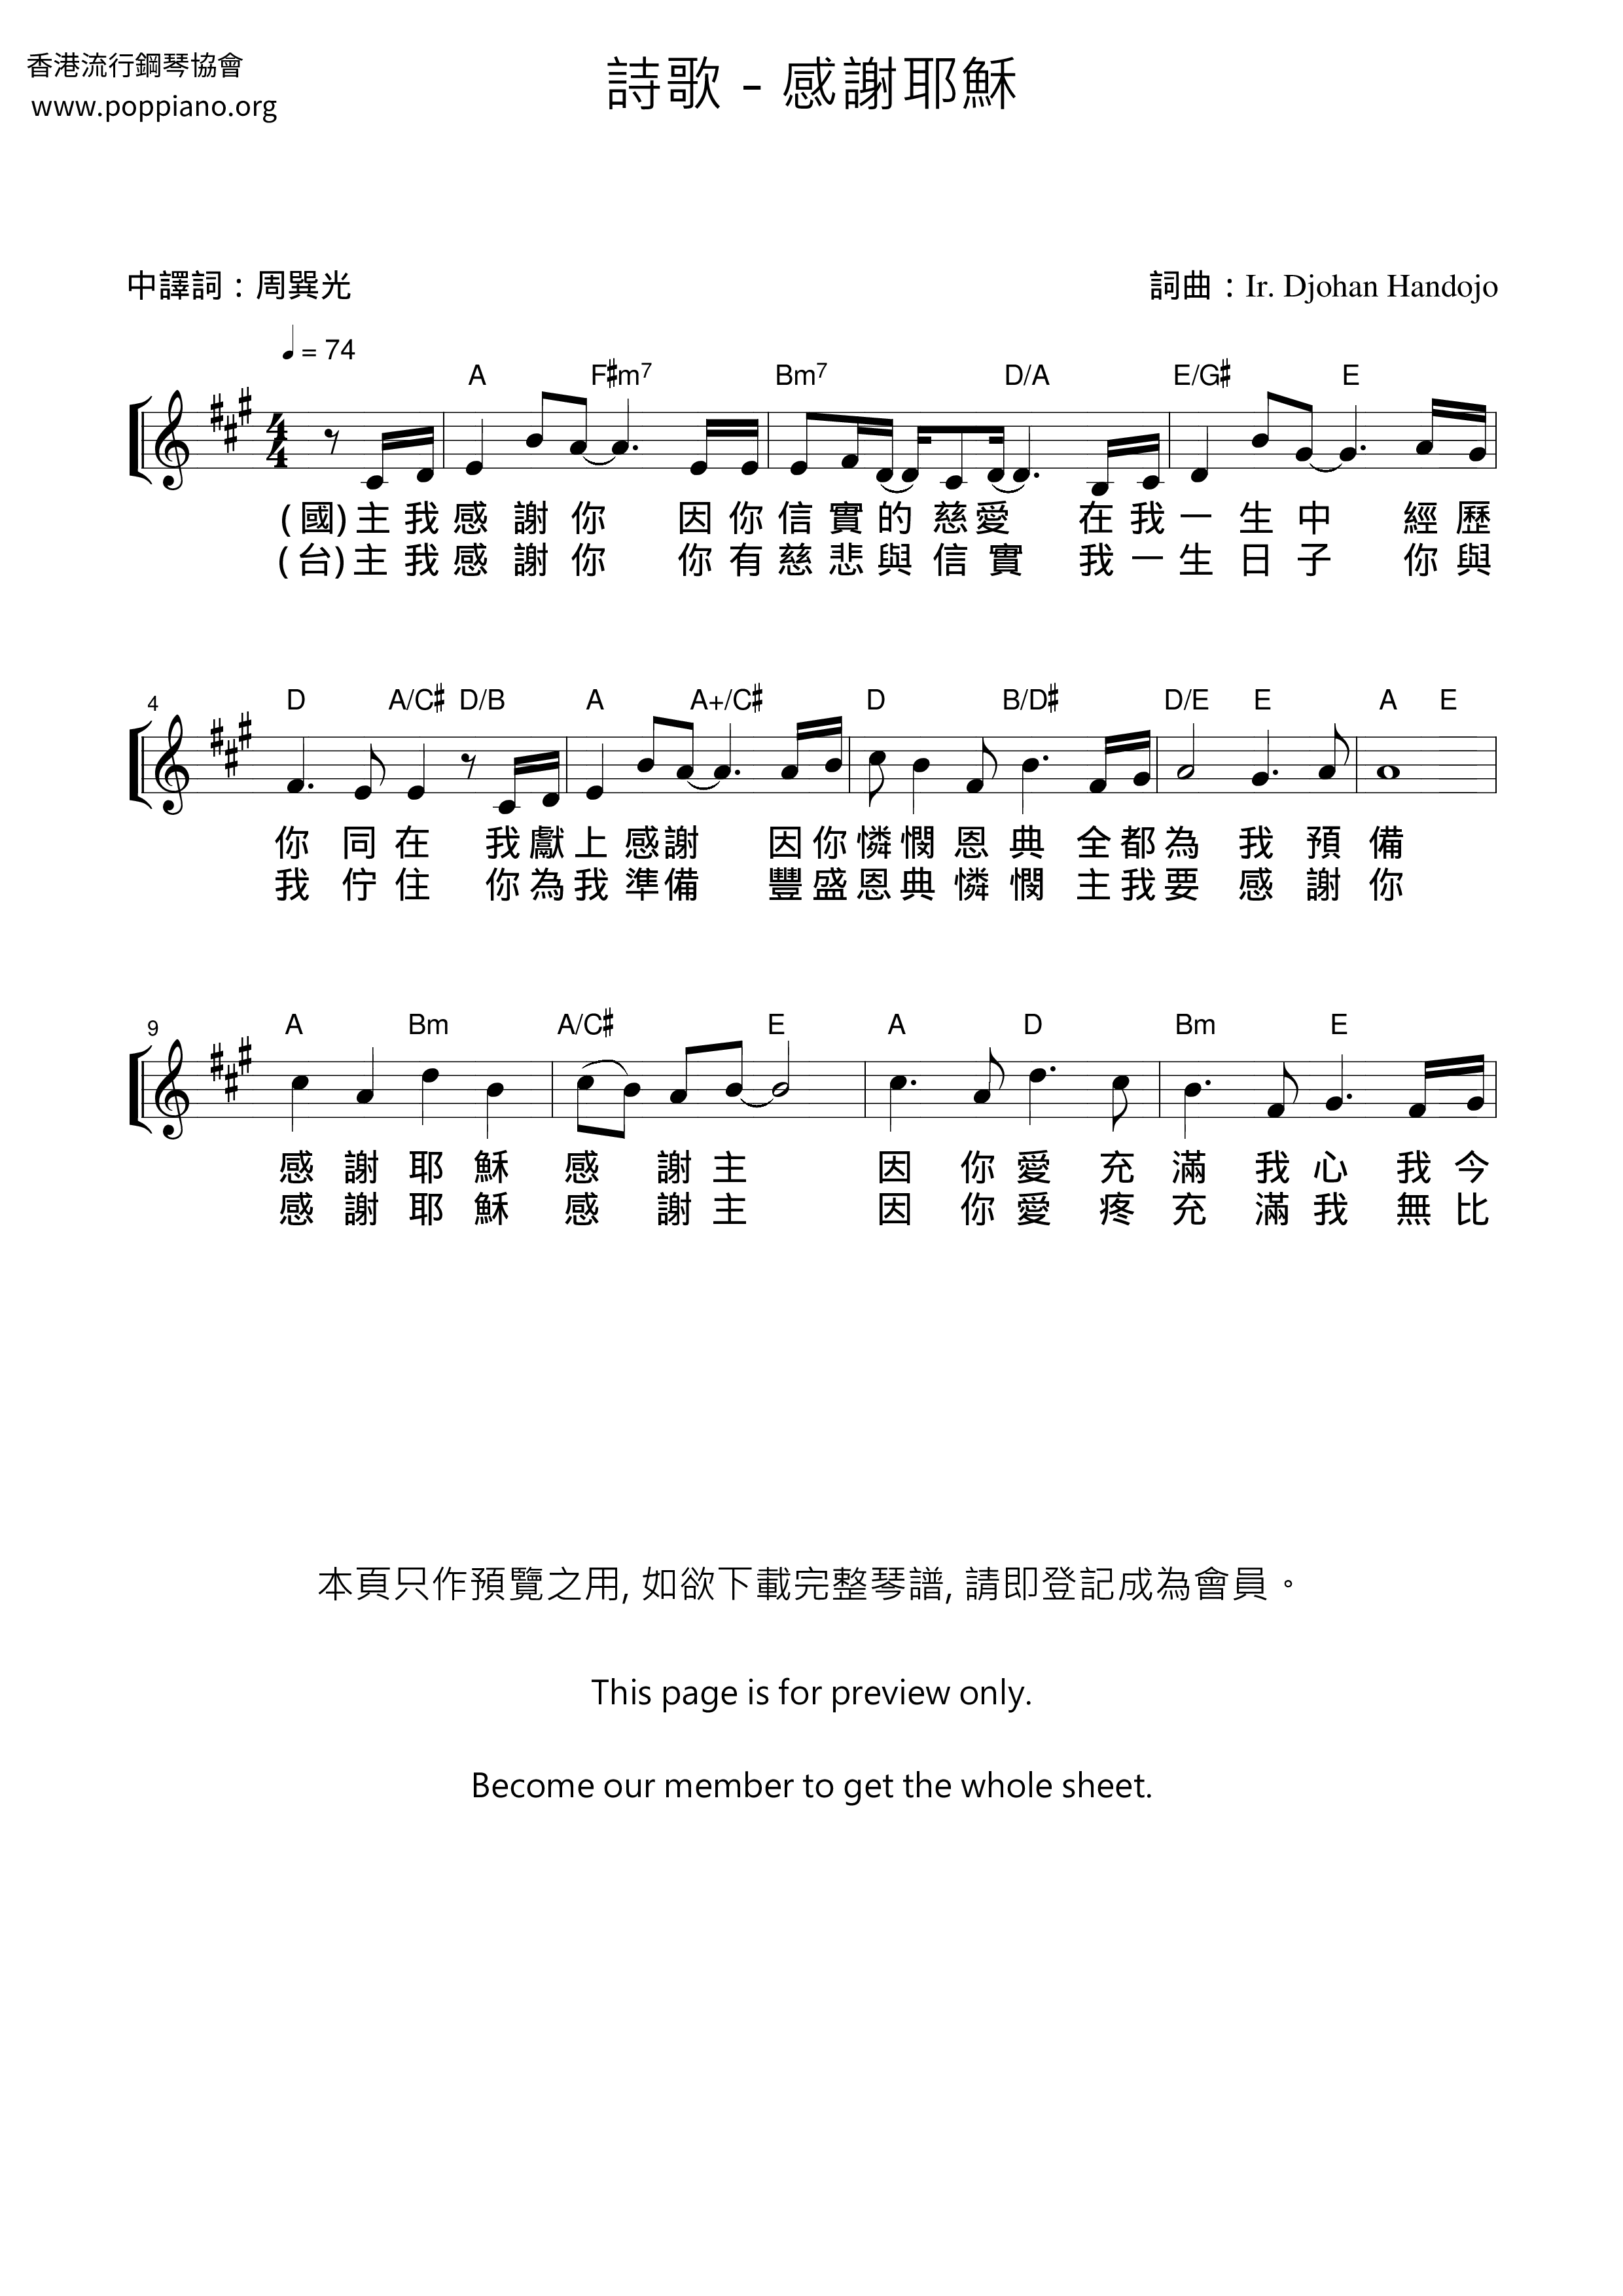 詩歌 感謝耶穌琴譜 五線譜pdf 香港流行鋼琴協會琴譜下載